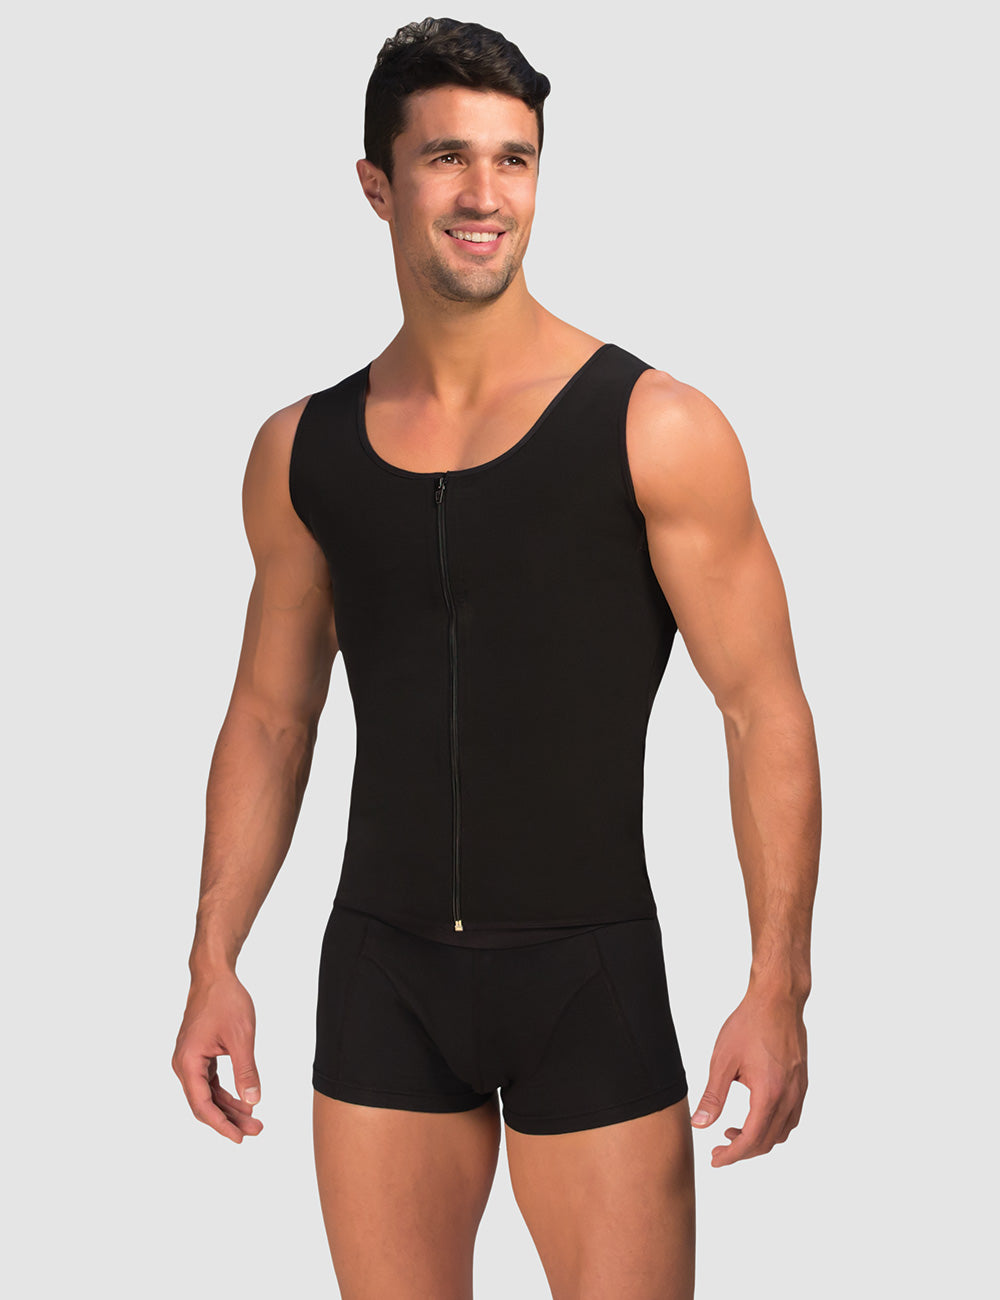 Slim N Lift TShirt for Men Mens Slimming Body Shaper T-Shirt, Black, Small  Slimming shirt